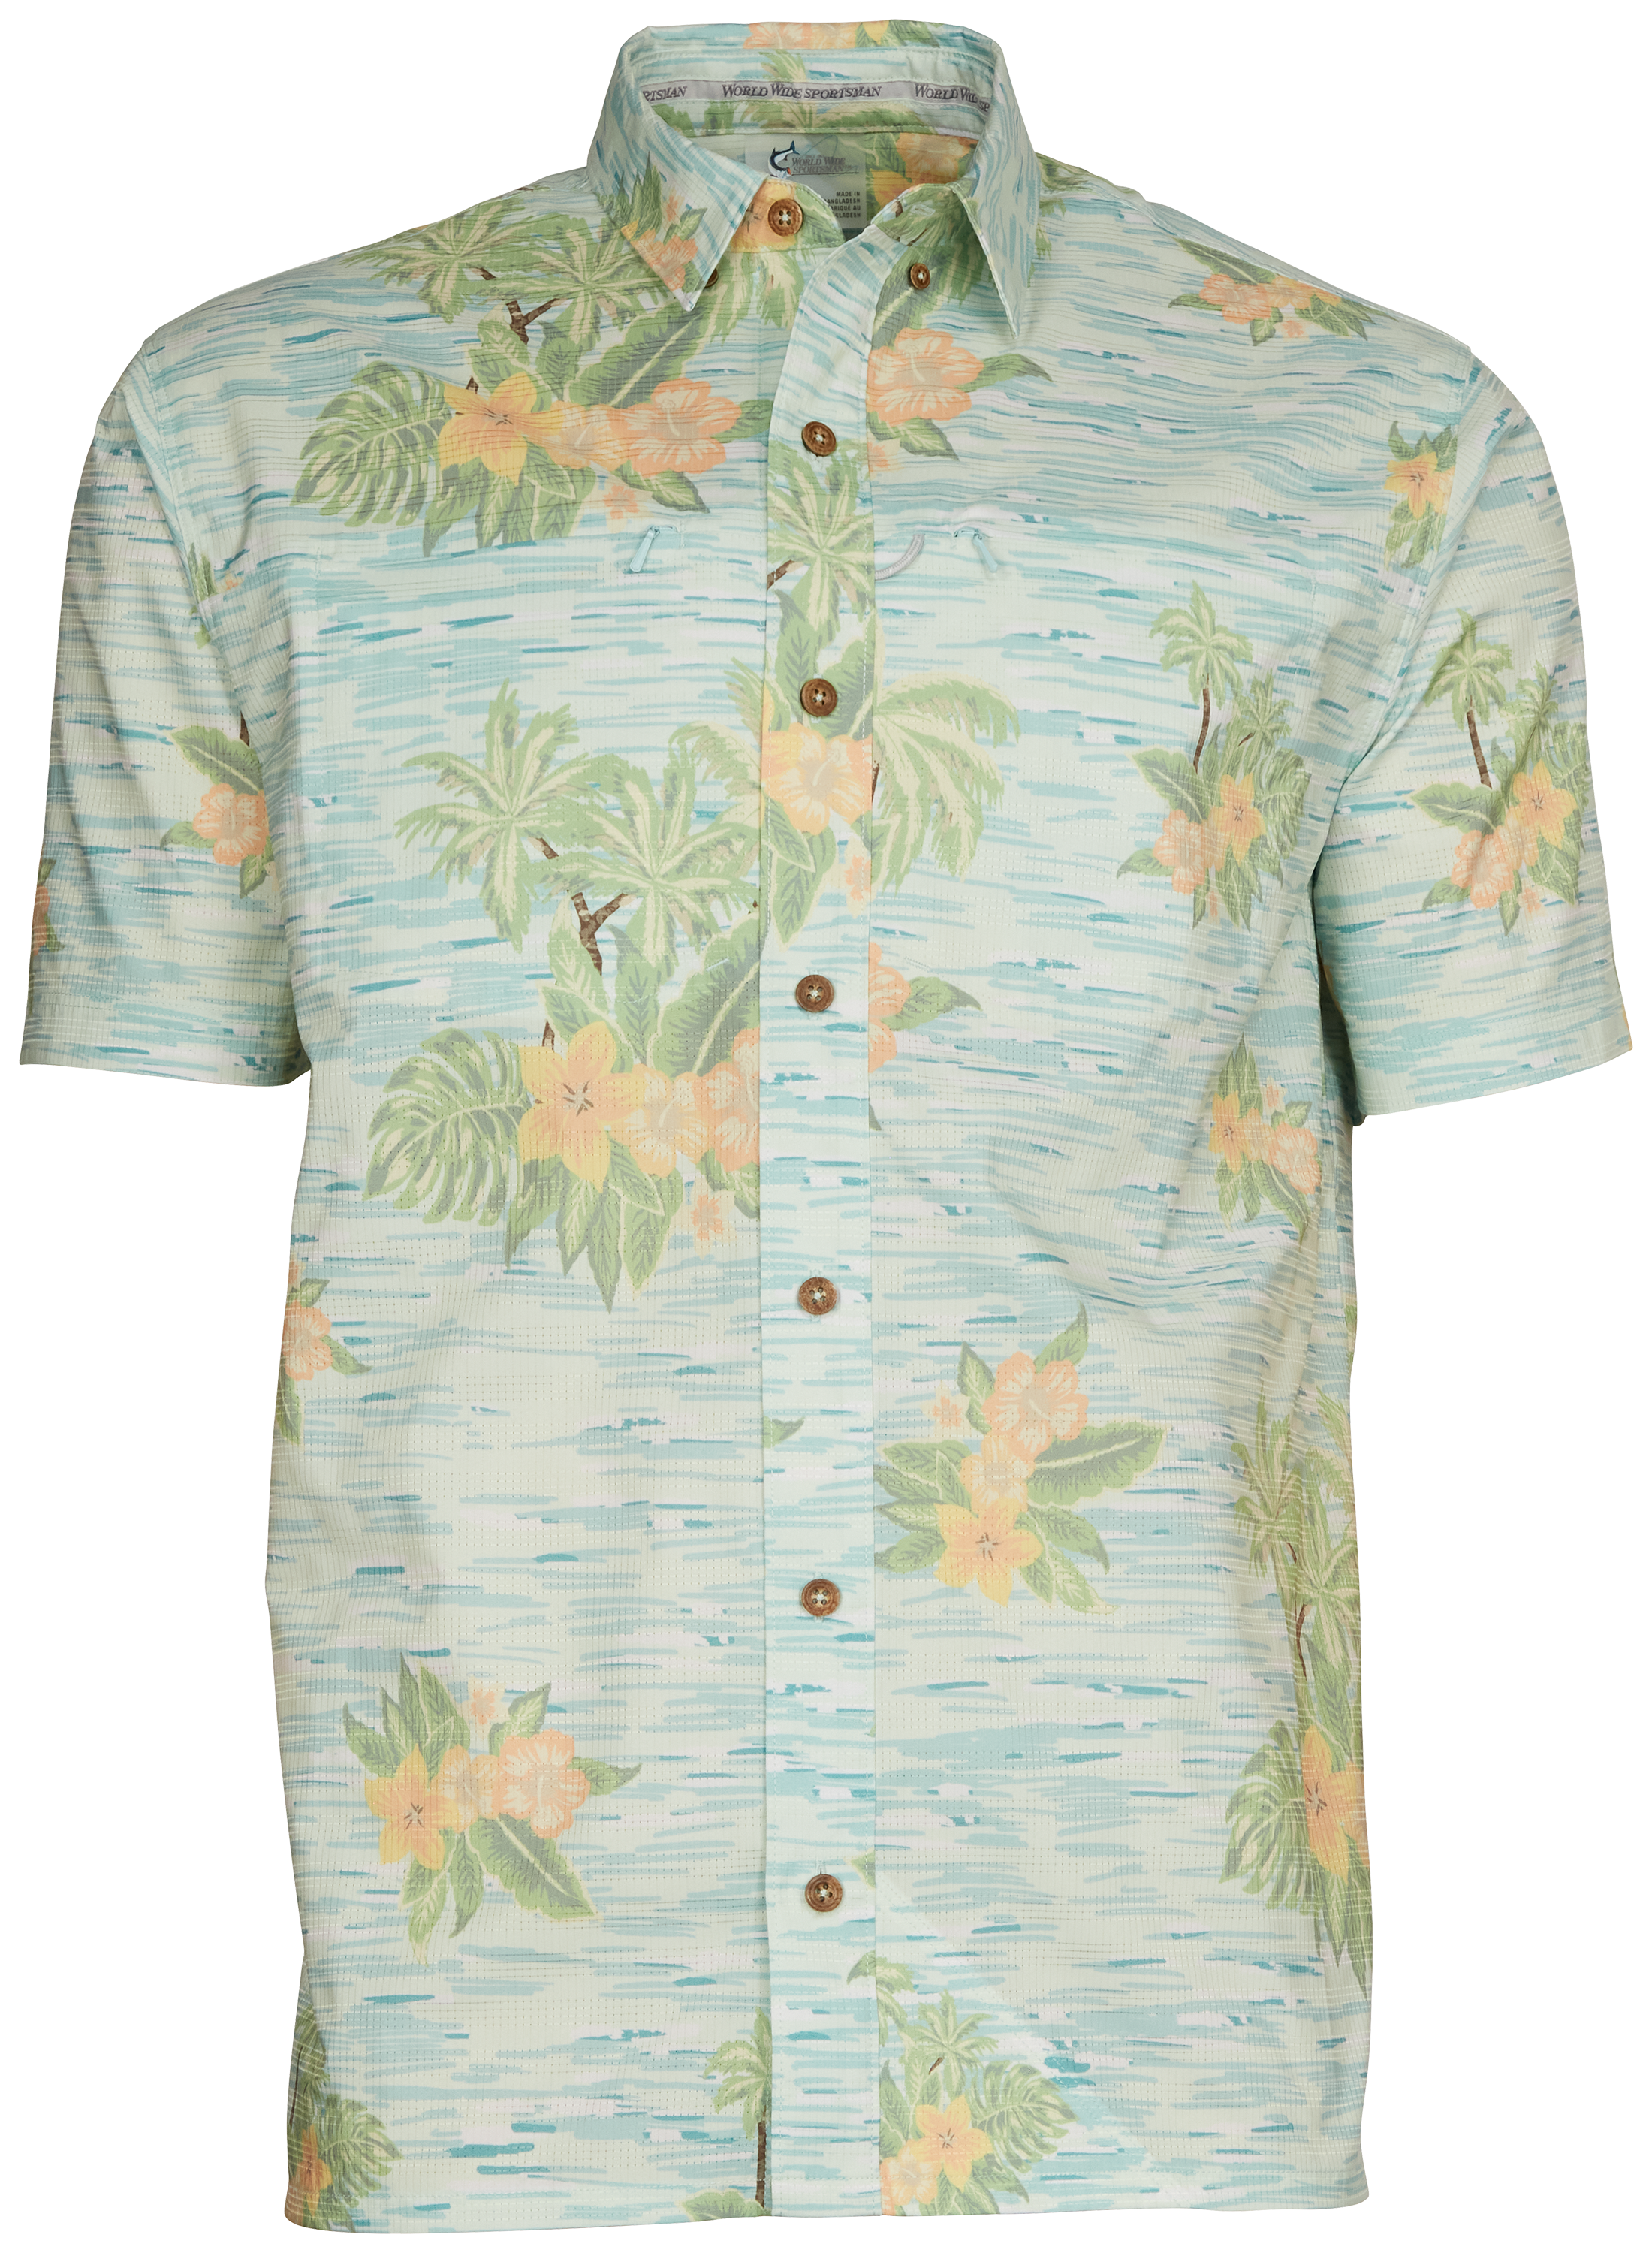 World Wide Sportsman Seacrest Print Short-Sleeve Button-Down Shirt for Men - Blue Hawaiian - L